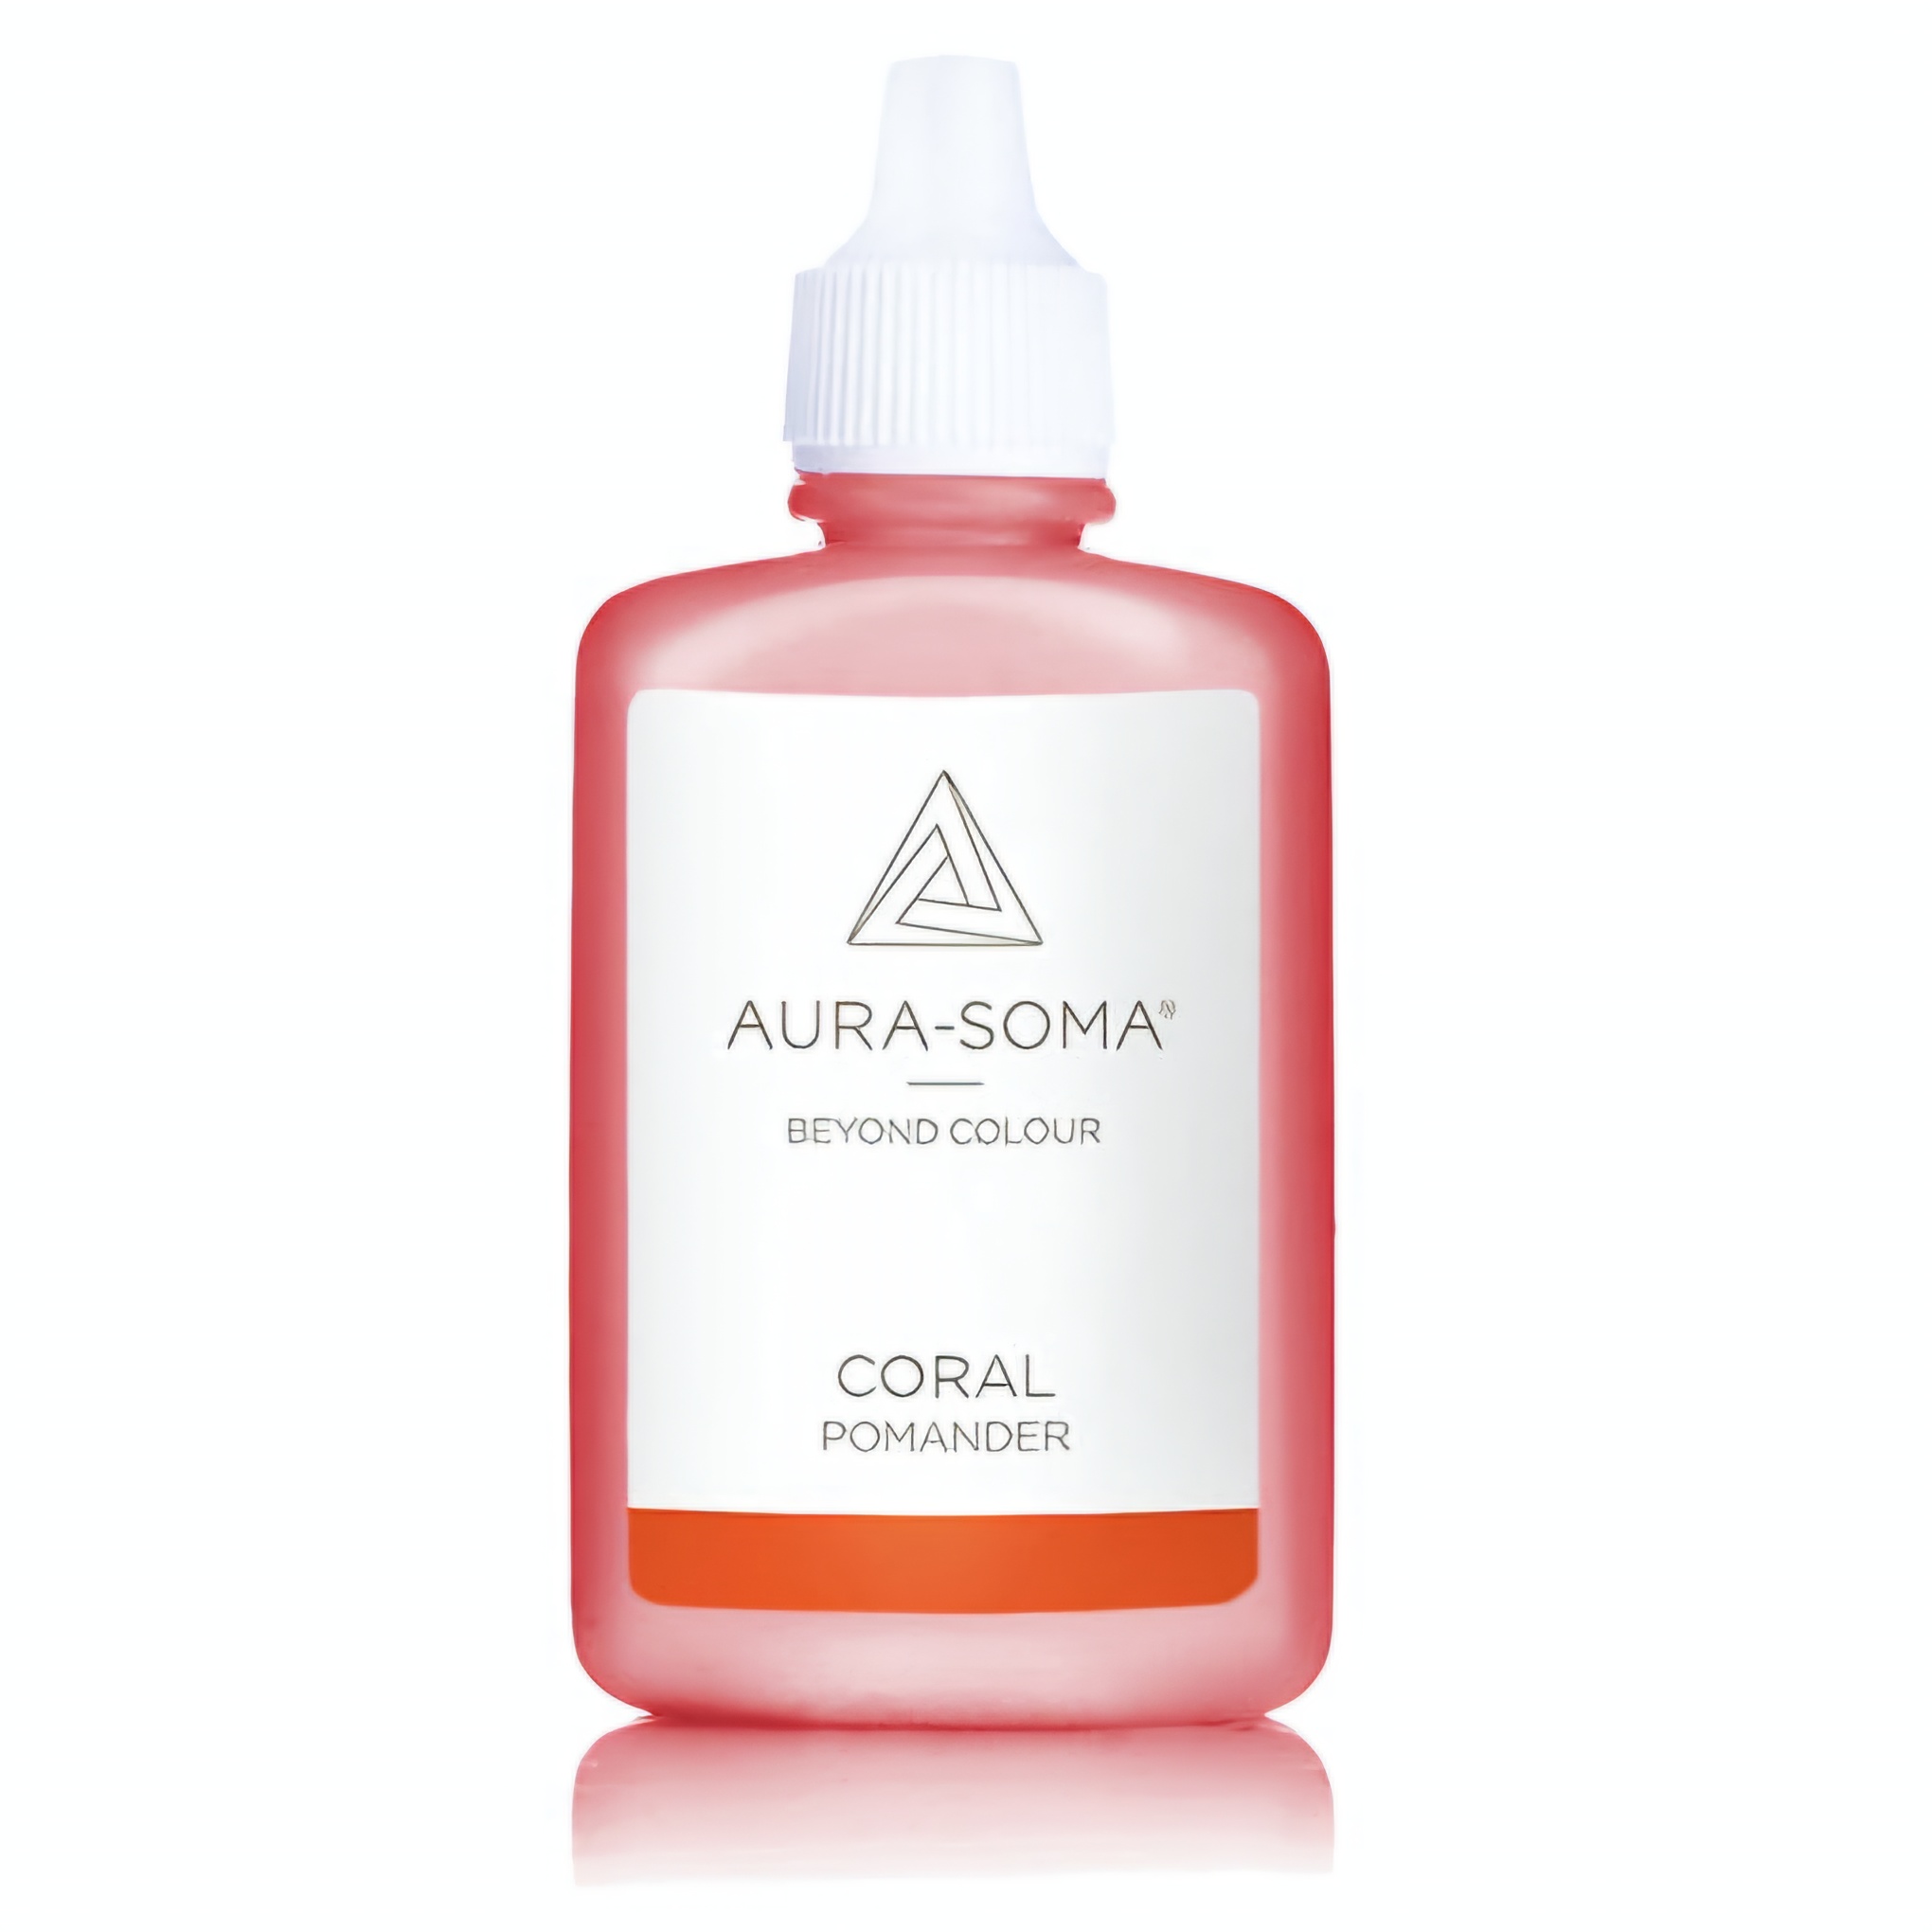 Aura-Soma pomander p05 korálový je v plastové lahvičce ve verzi 25ml. Má na sobě etiketu se značkou Aura-Soma a nápis 